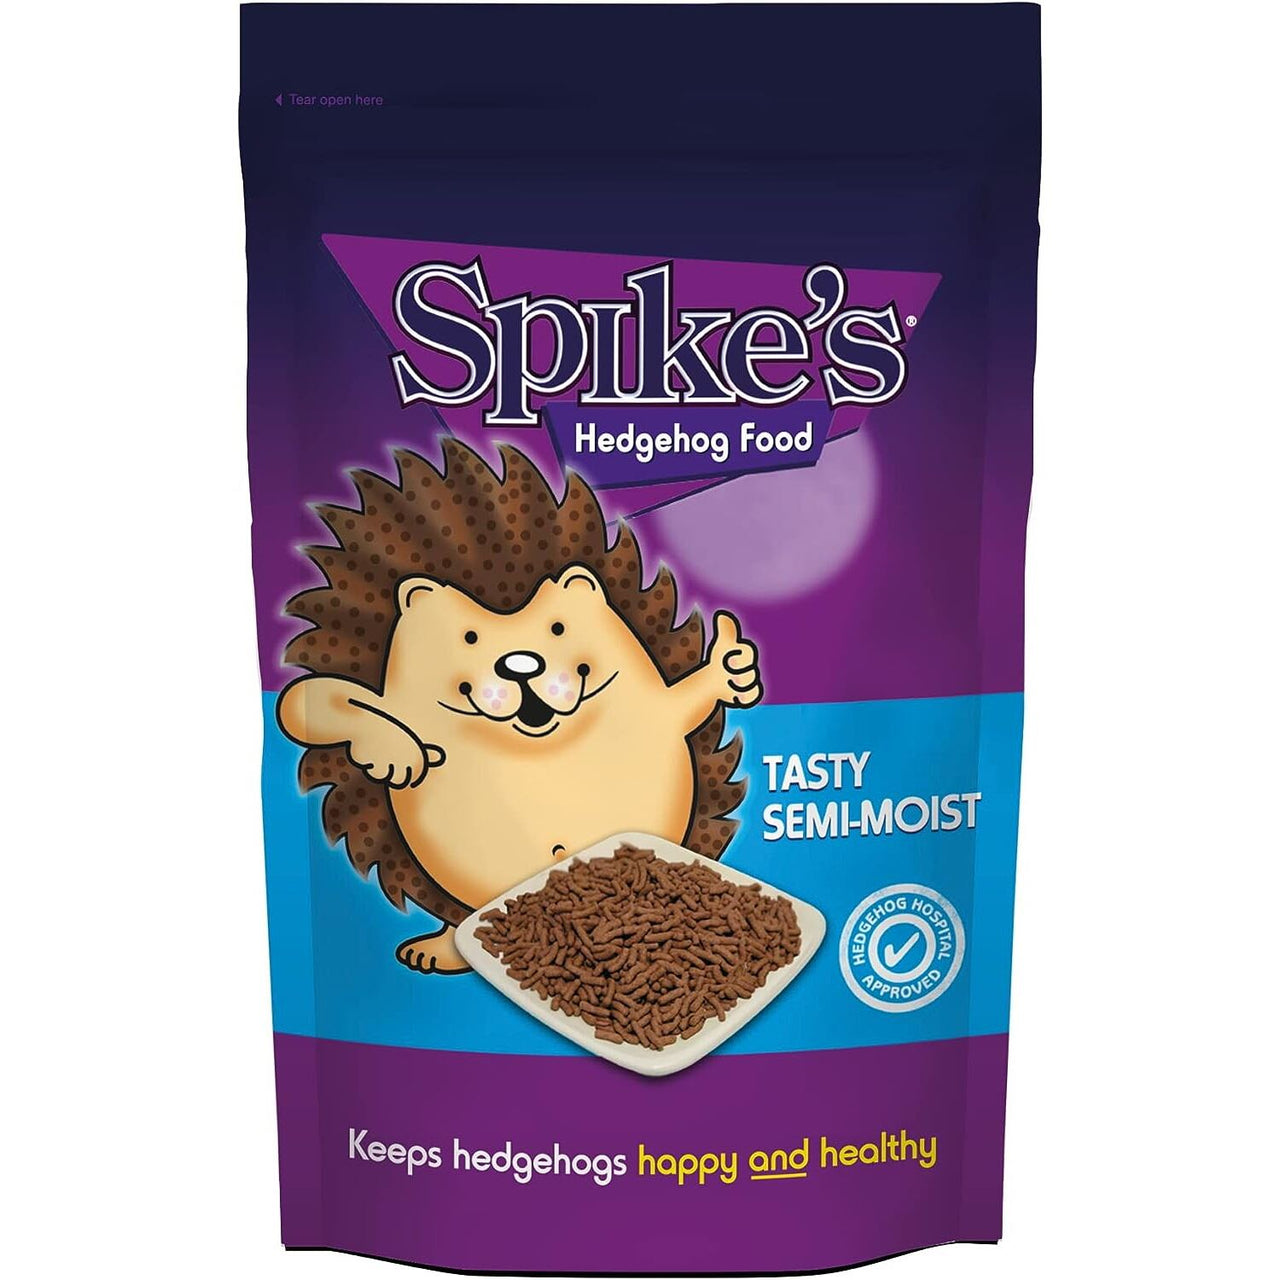 Spikes - Tasty Semi-Moist Hedgehog Food, 1.3kg Pack